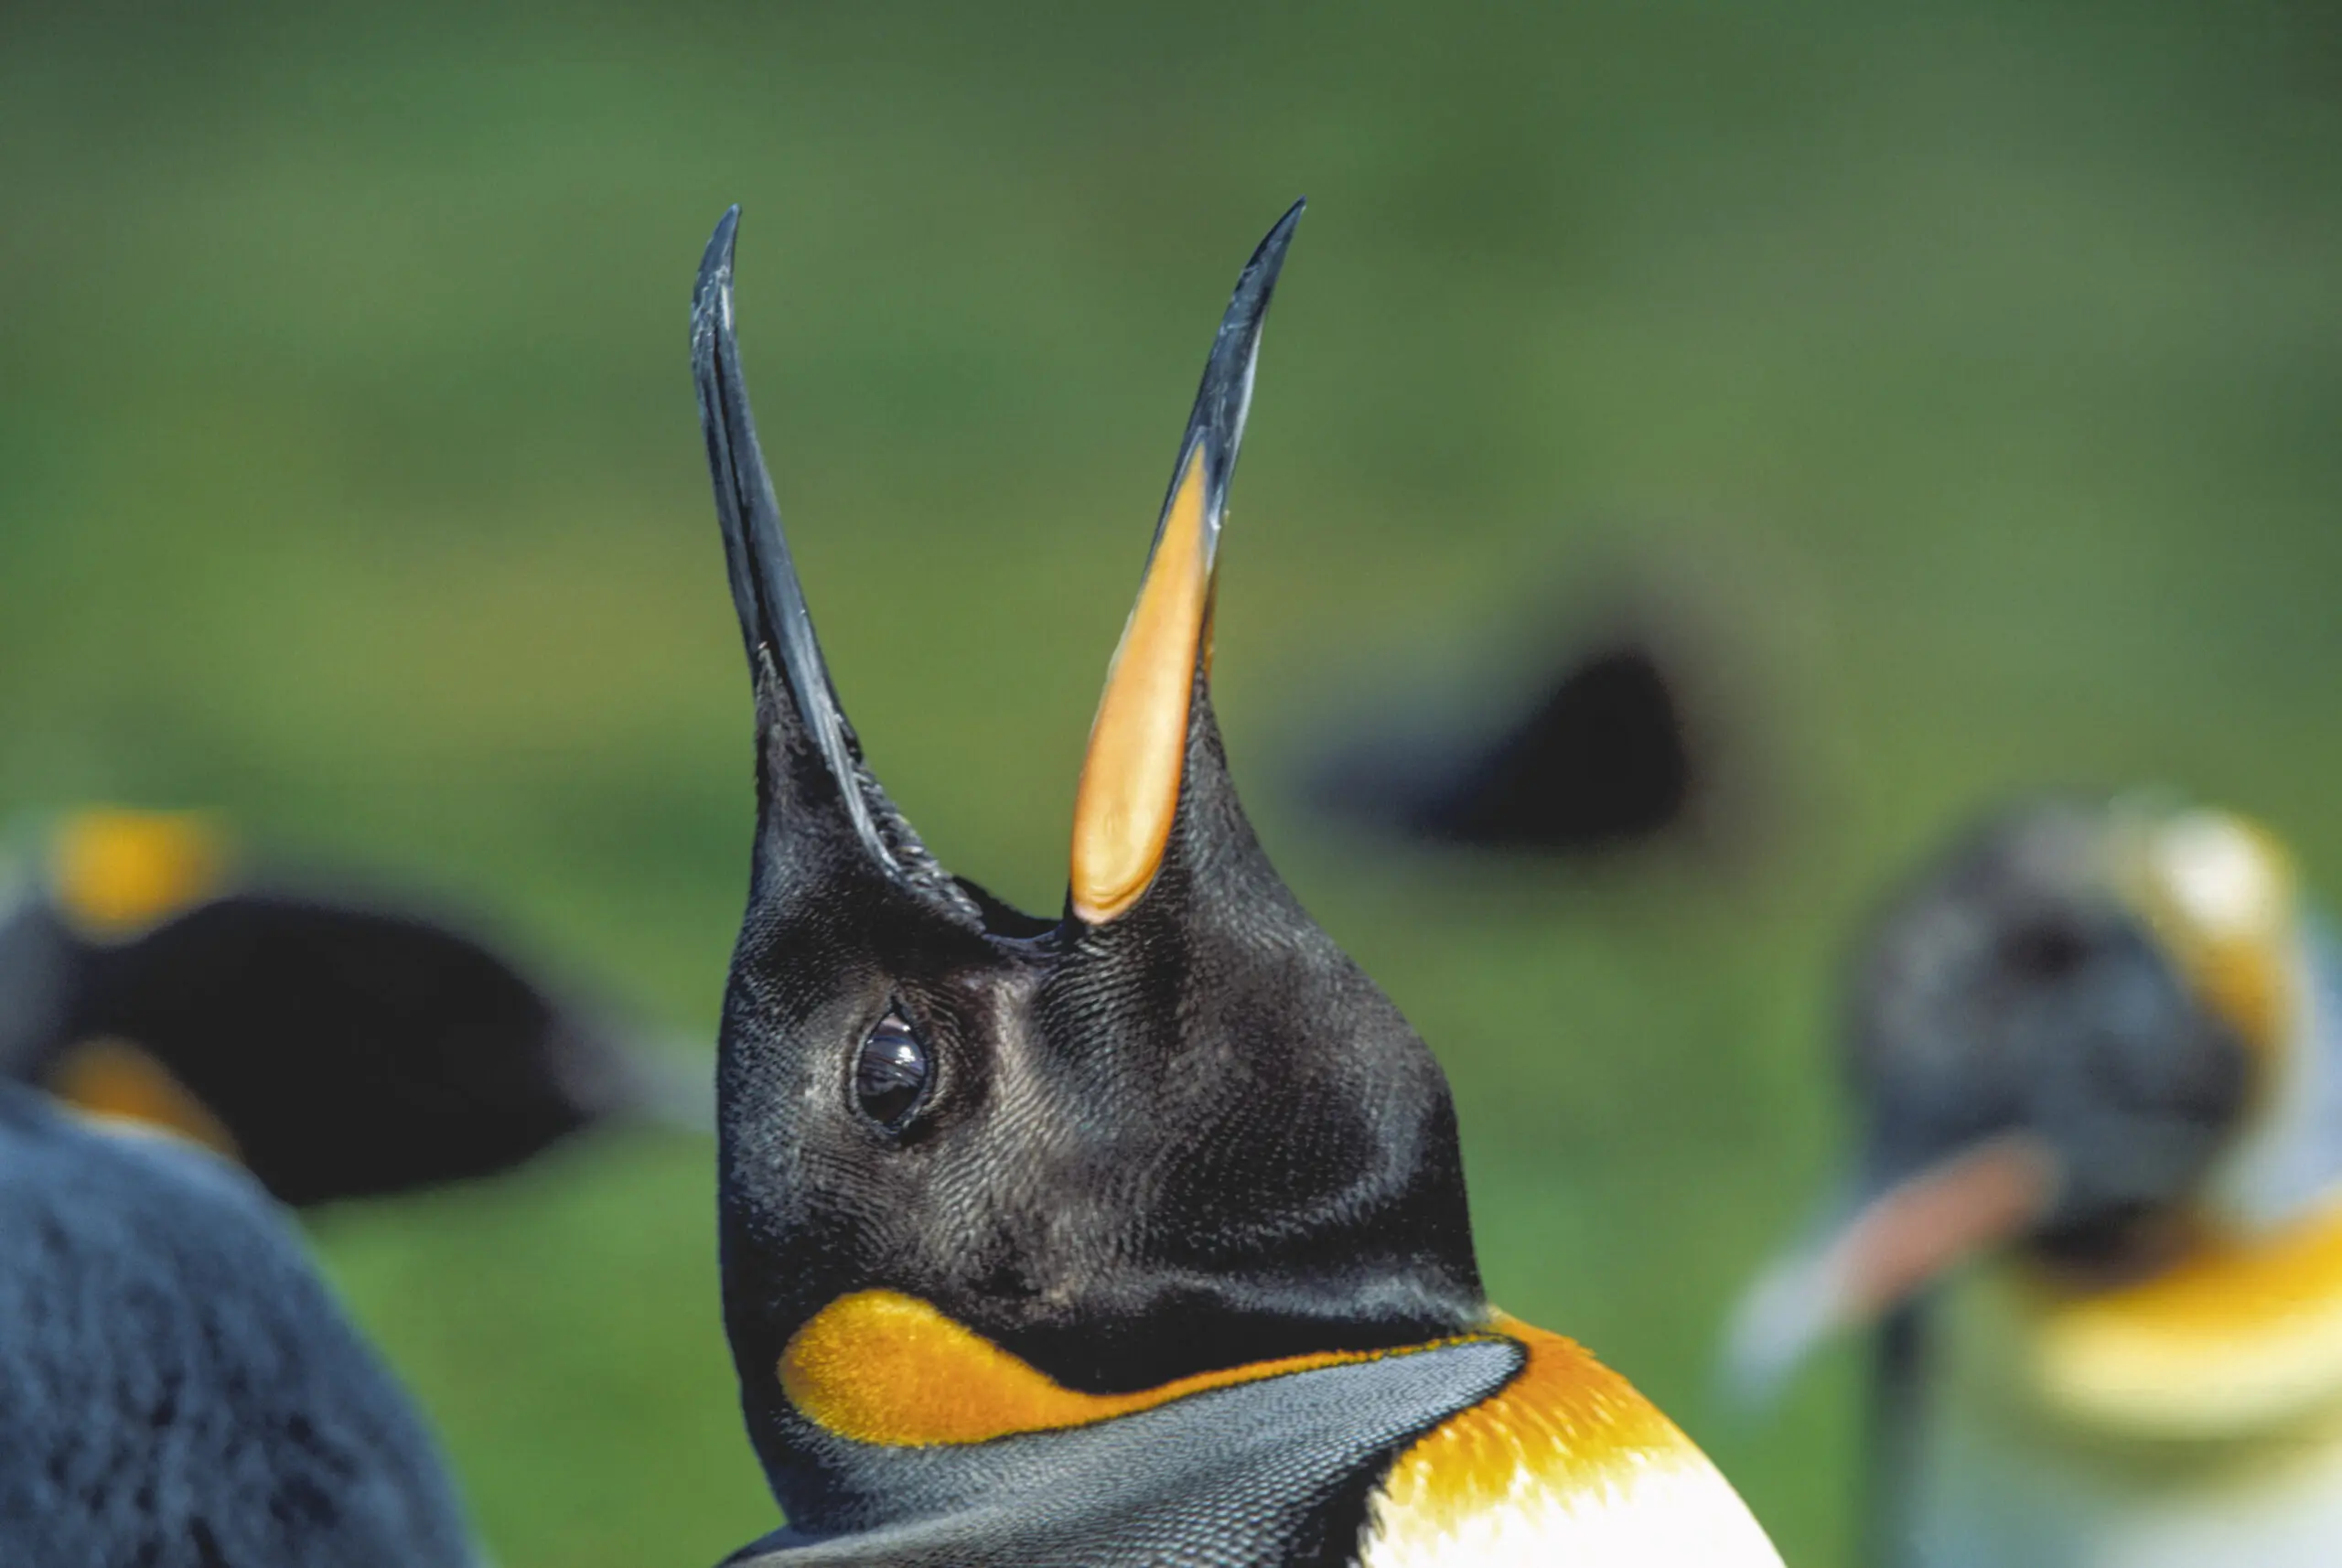 Wandbild (247) Ruf der Wildnis1 präsentiert: Tiere,Pinguine